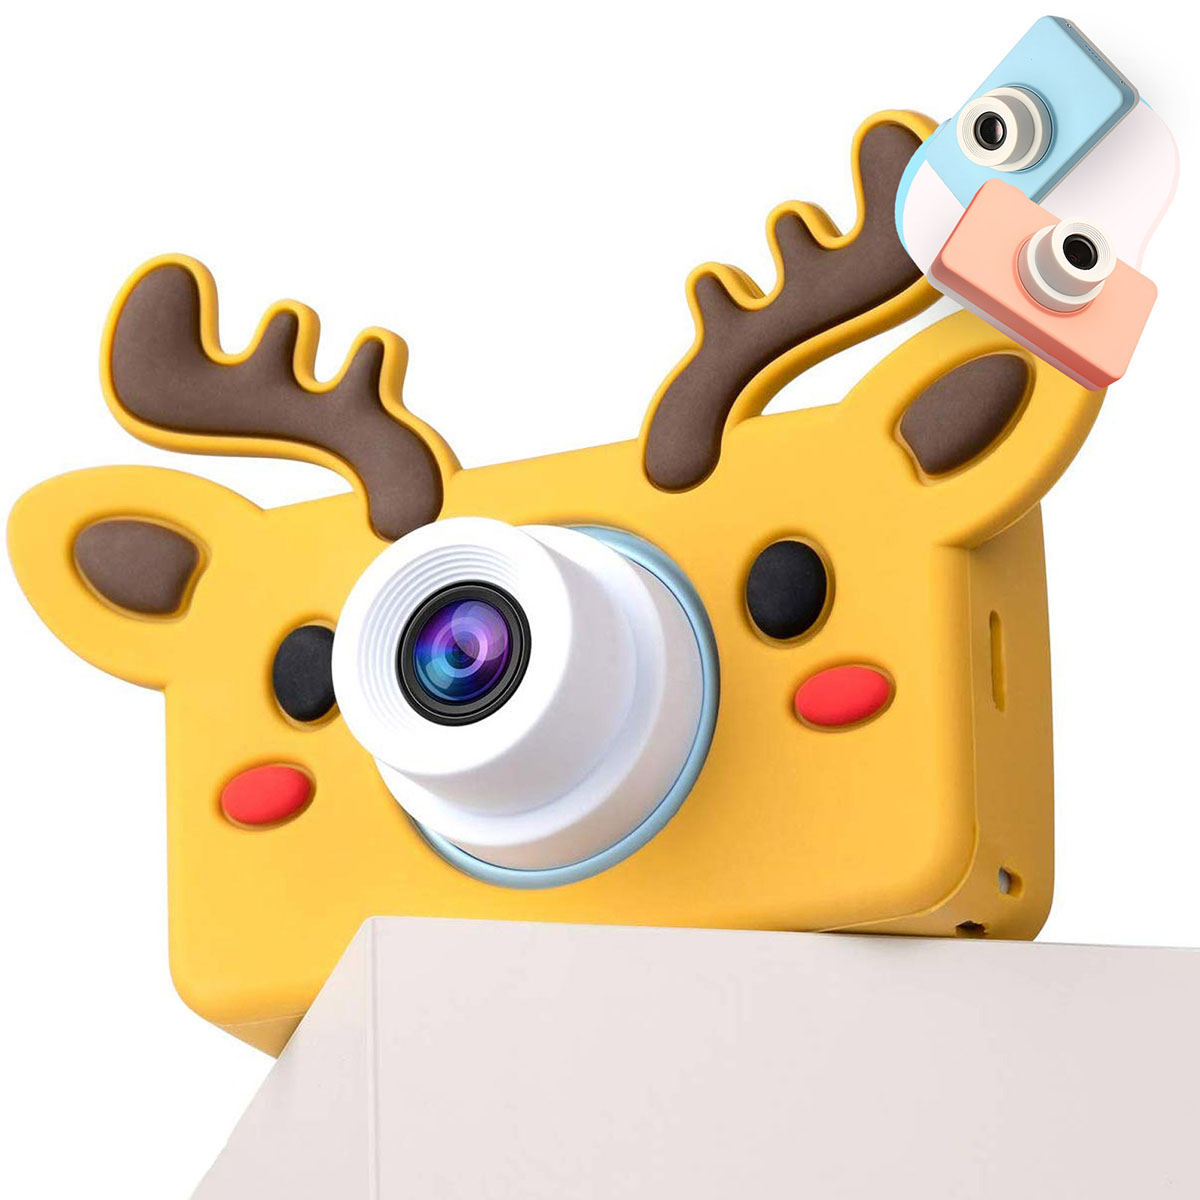 Детский фотоаппарат (игрушка), силиконовый сменный чехол "Оленёнок".